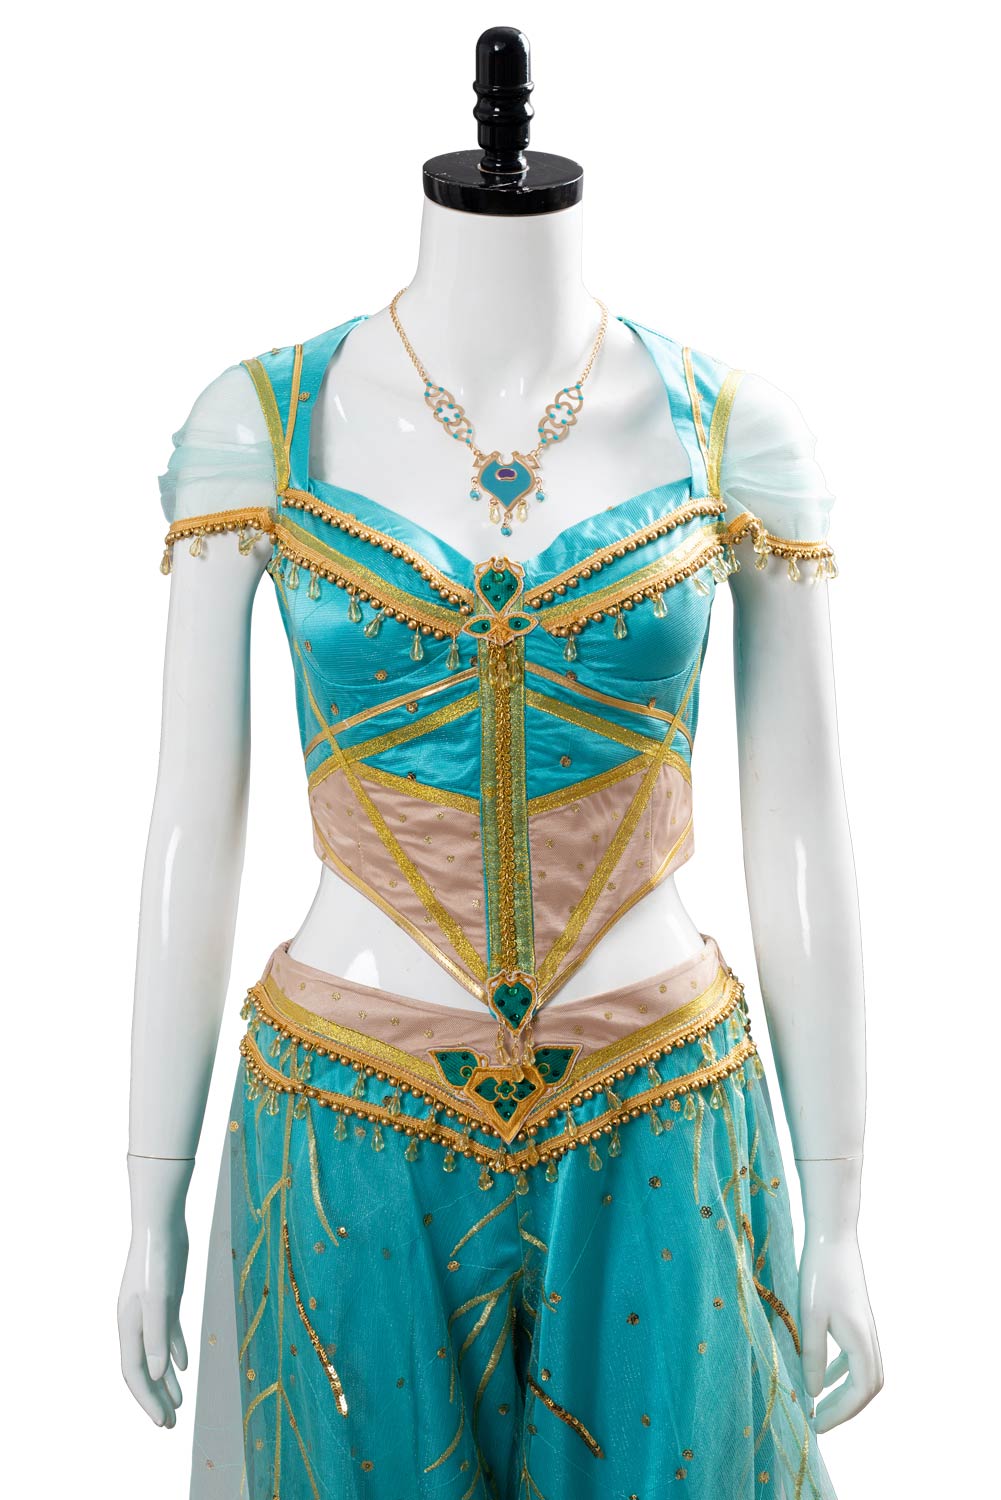 Aladdin Prinzessin Jasmin Kleid Cosplay Kostüm